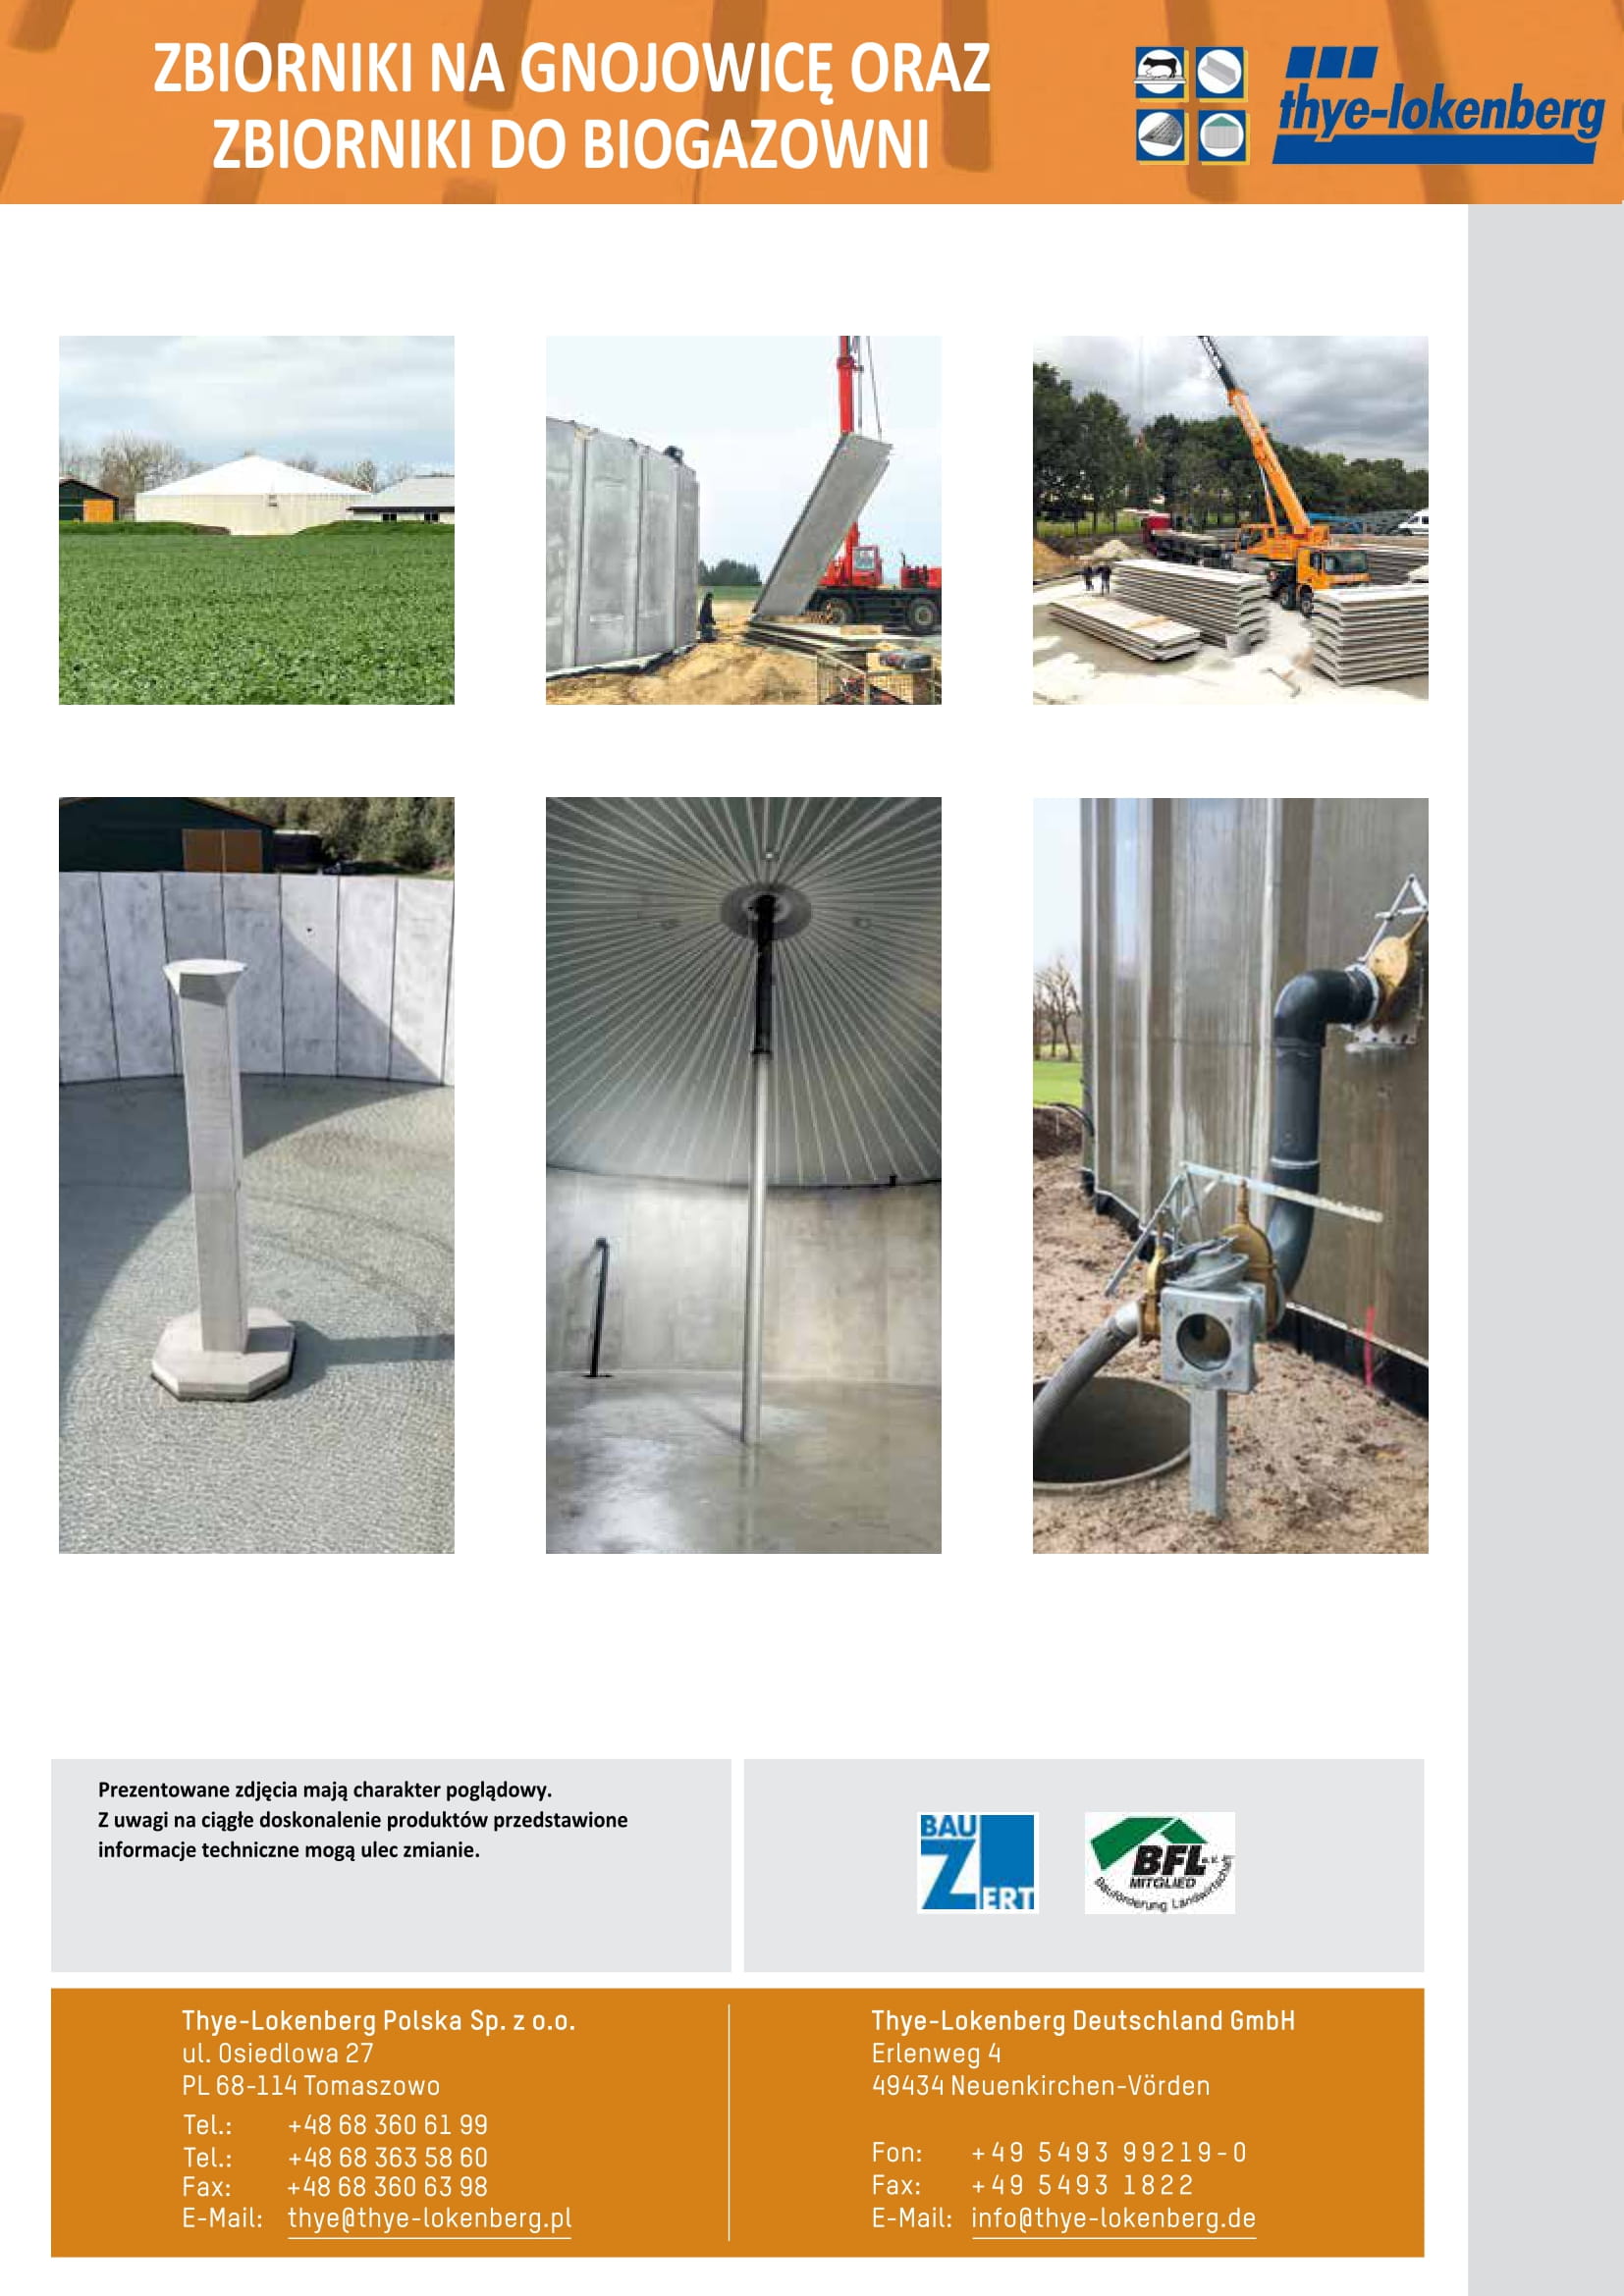 Zbiorniki do składowania gnojowicy - zbiorniki do biogazowni